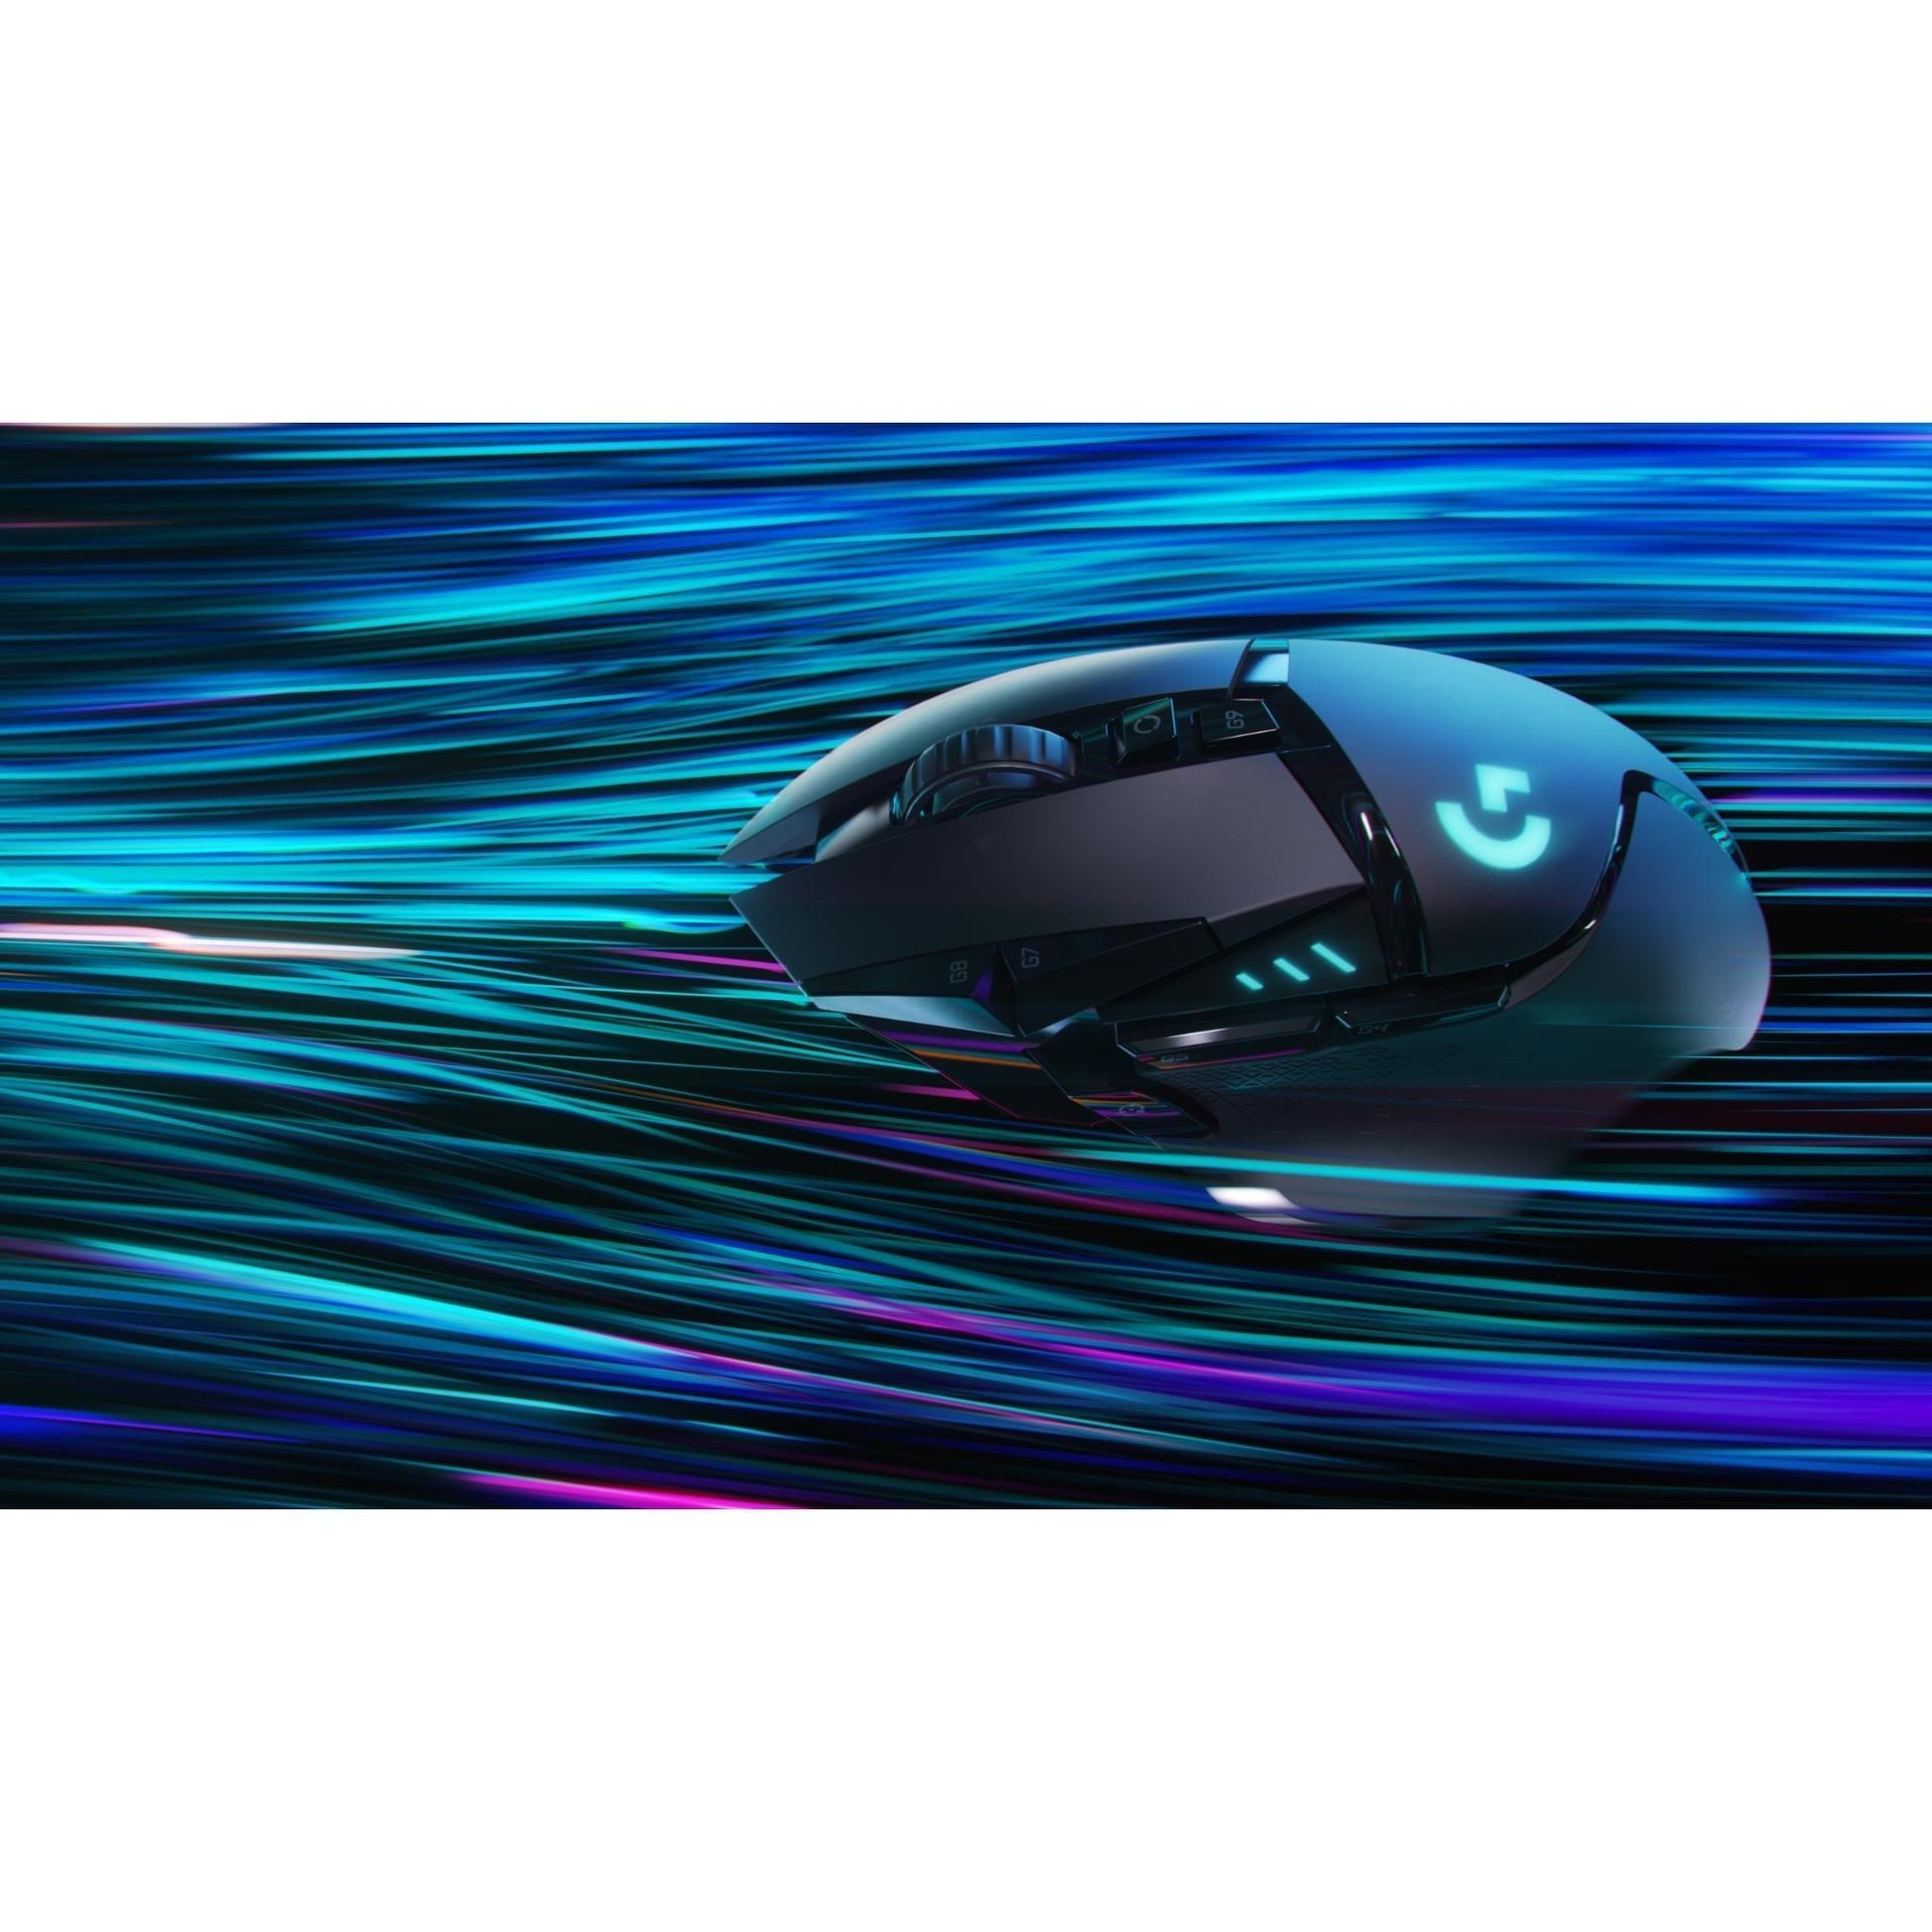 Logitech G502 Lightspeed Wireless Gaming Mouse - Marknet Technology